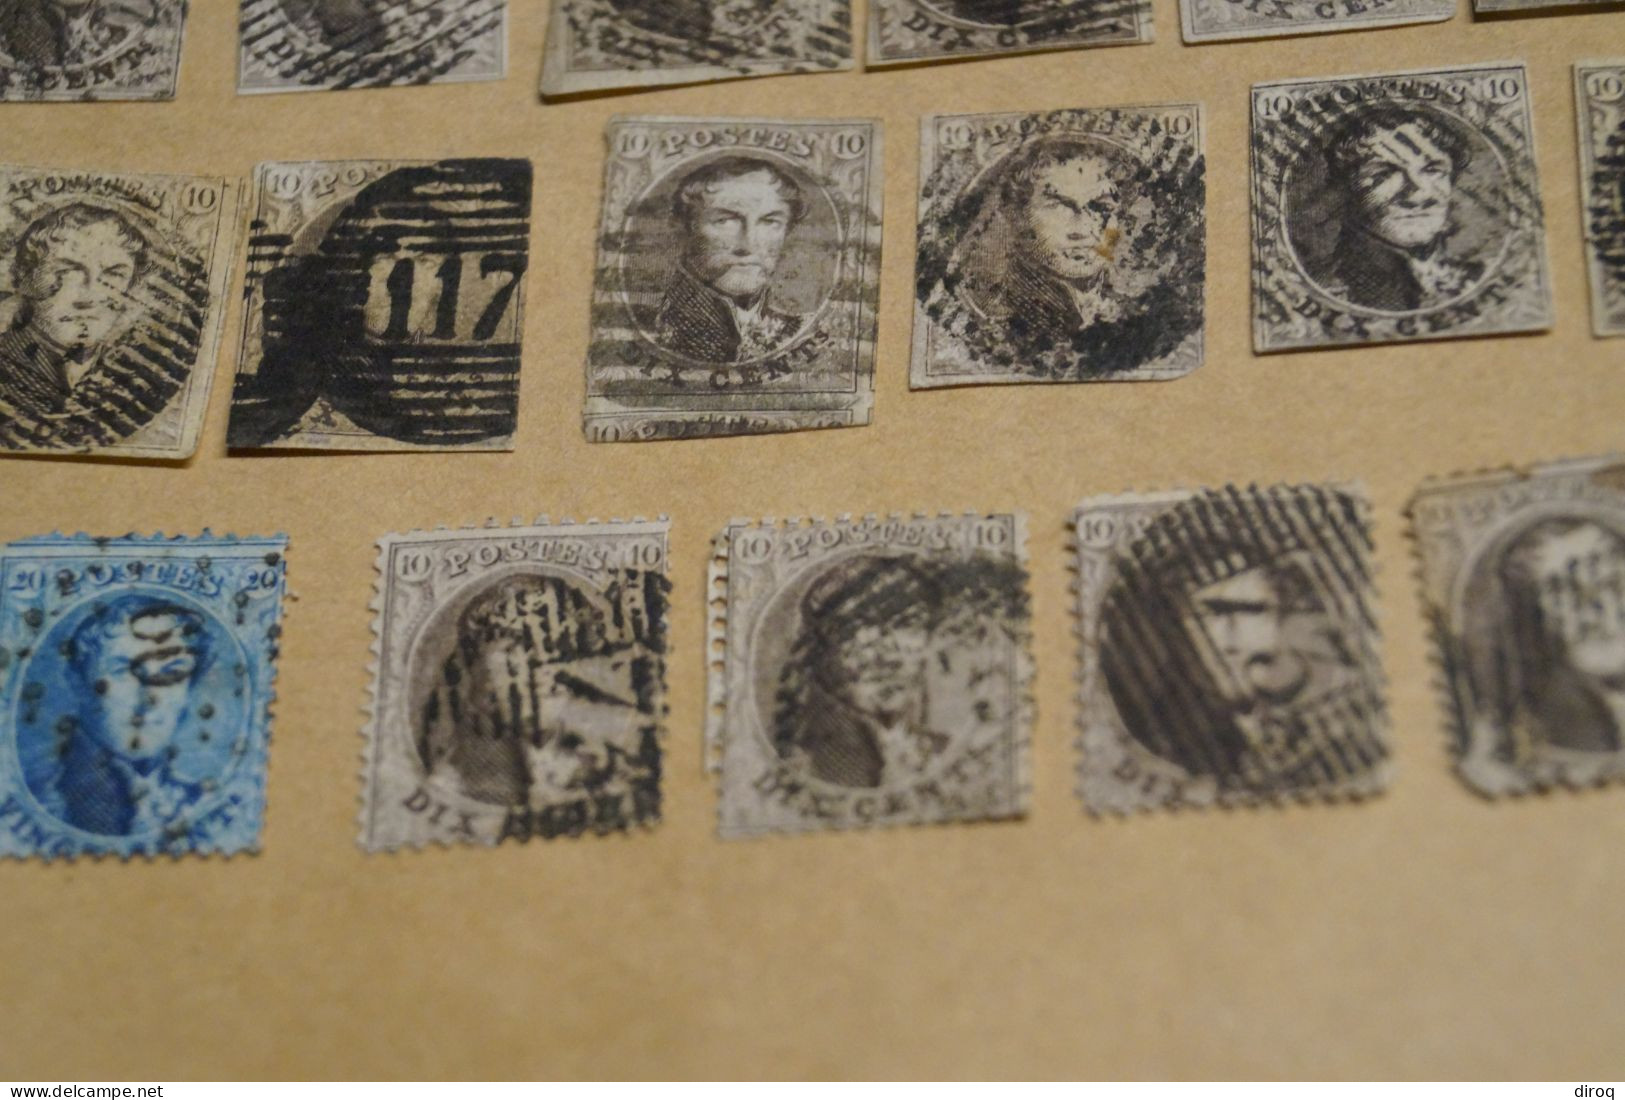 RARE lot de 47 timbres non dentelés,1860-1861,oblitérations de bureau de poste à identifier,timbres